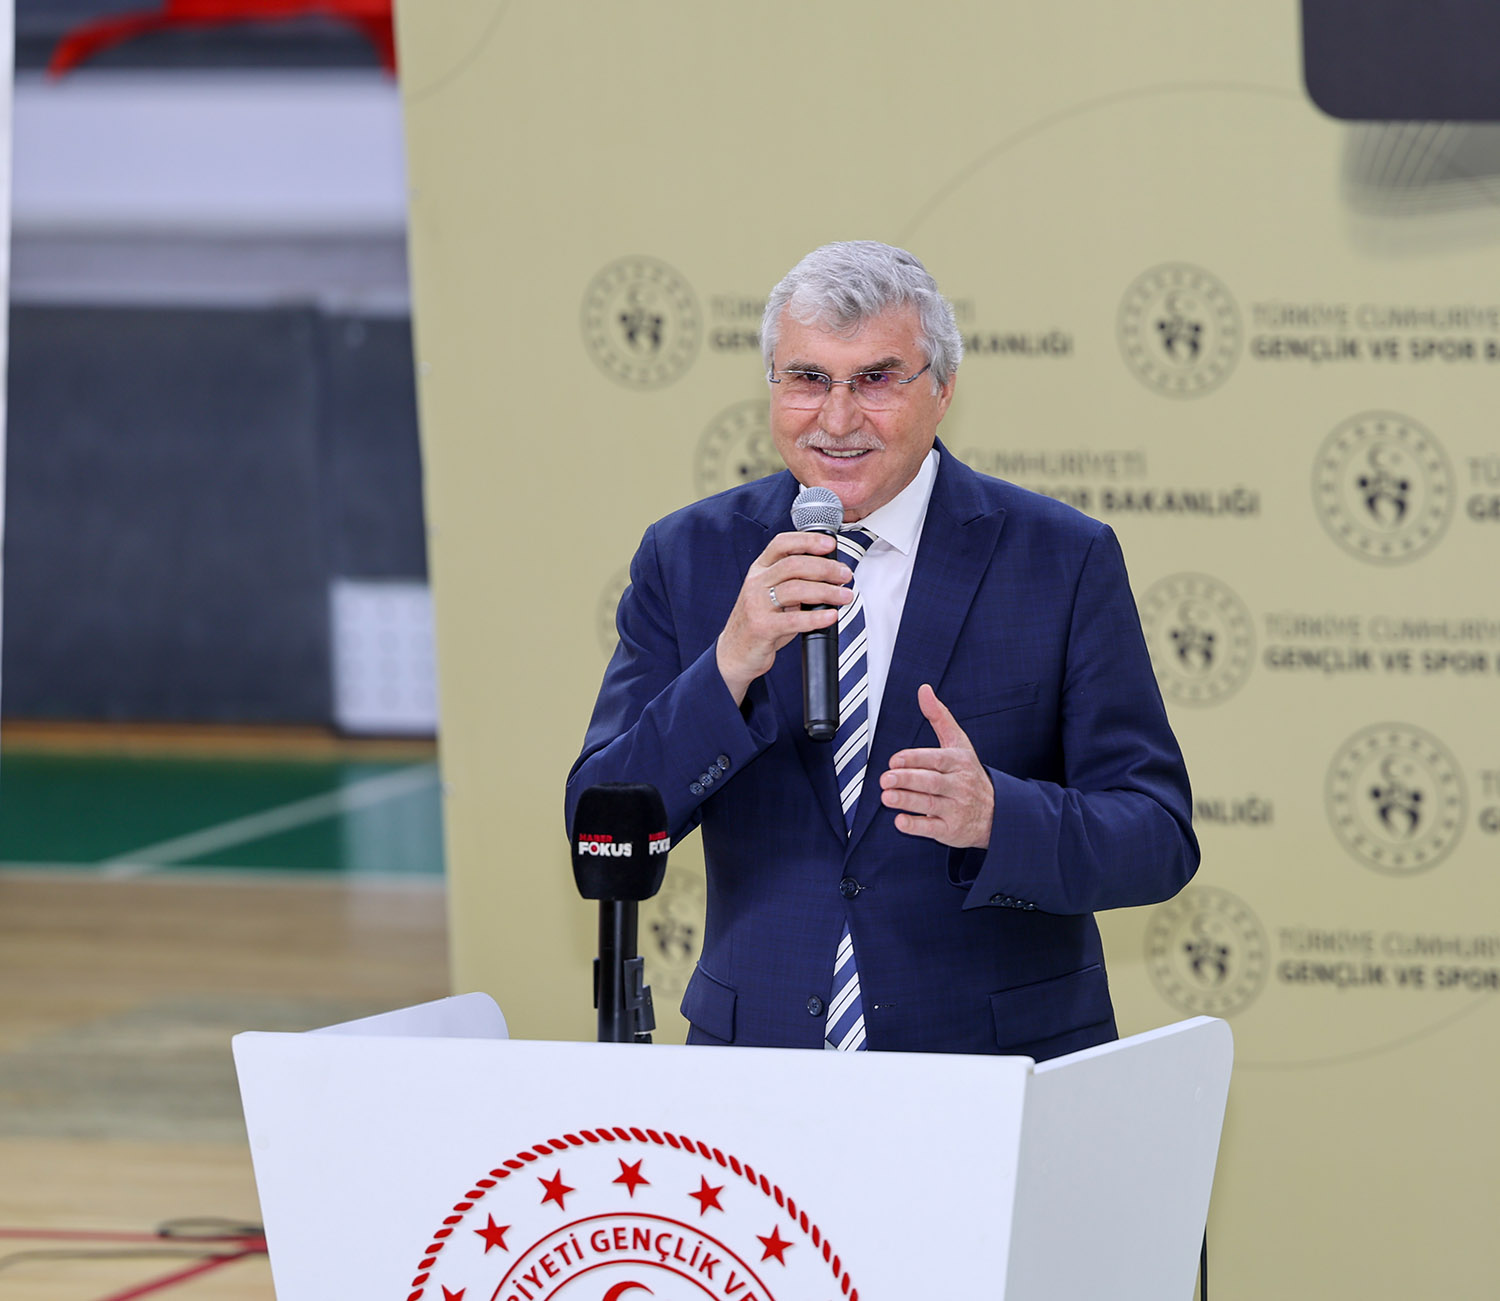 Başkan Yüce törende açıkladı: “Büyükşehir’e düşen payın yarısını spor kulüplerimize bağışlıyoruz”